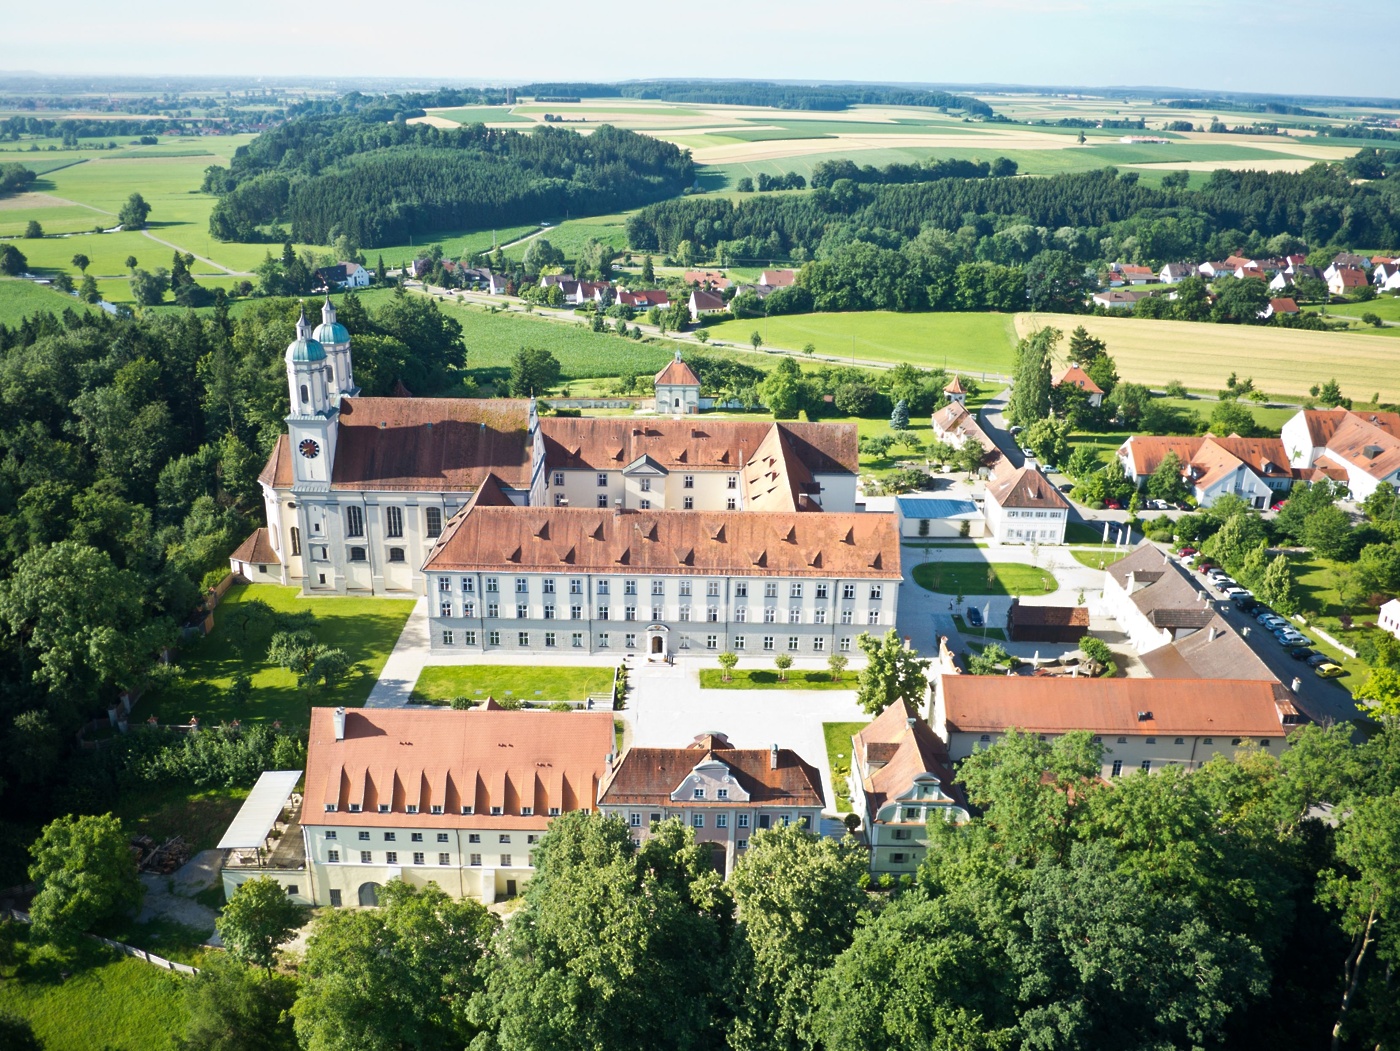 samostan holzen © regio augsburg tourismus gmbh kloster holzen hotel gmbh